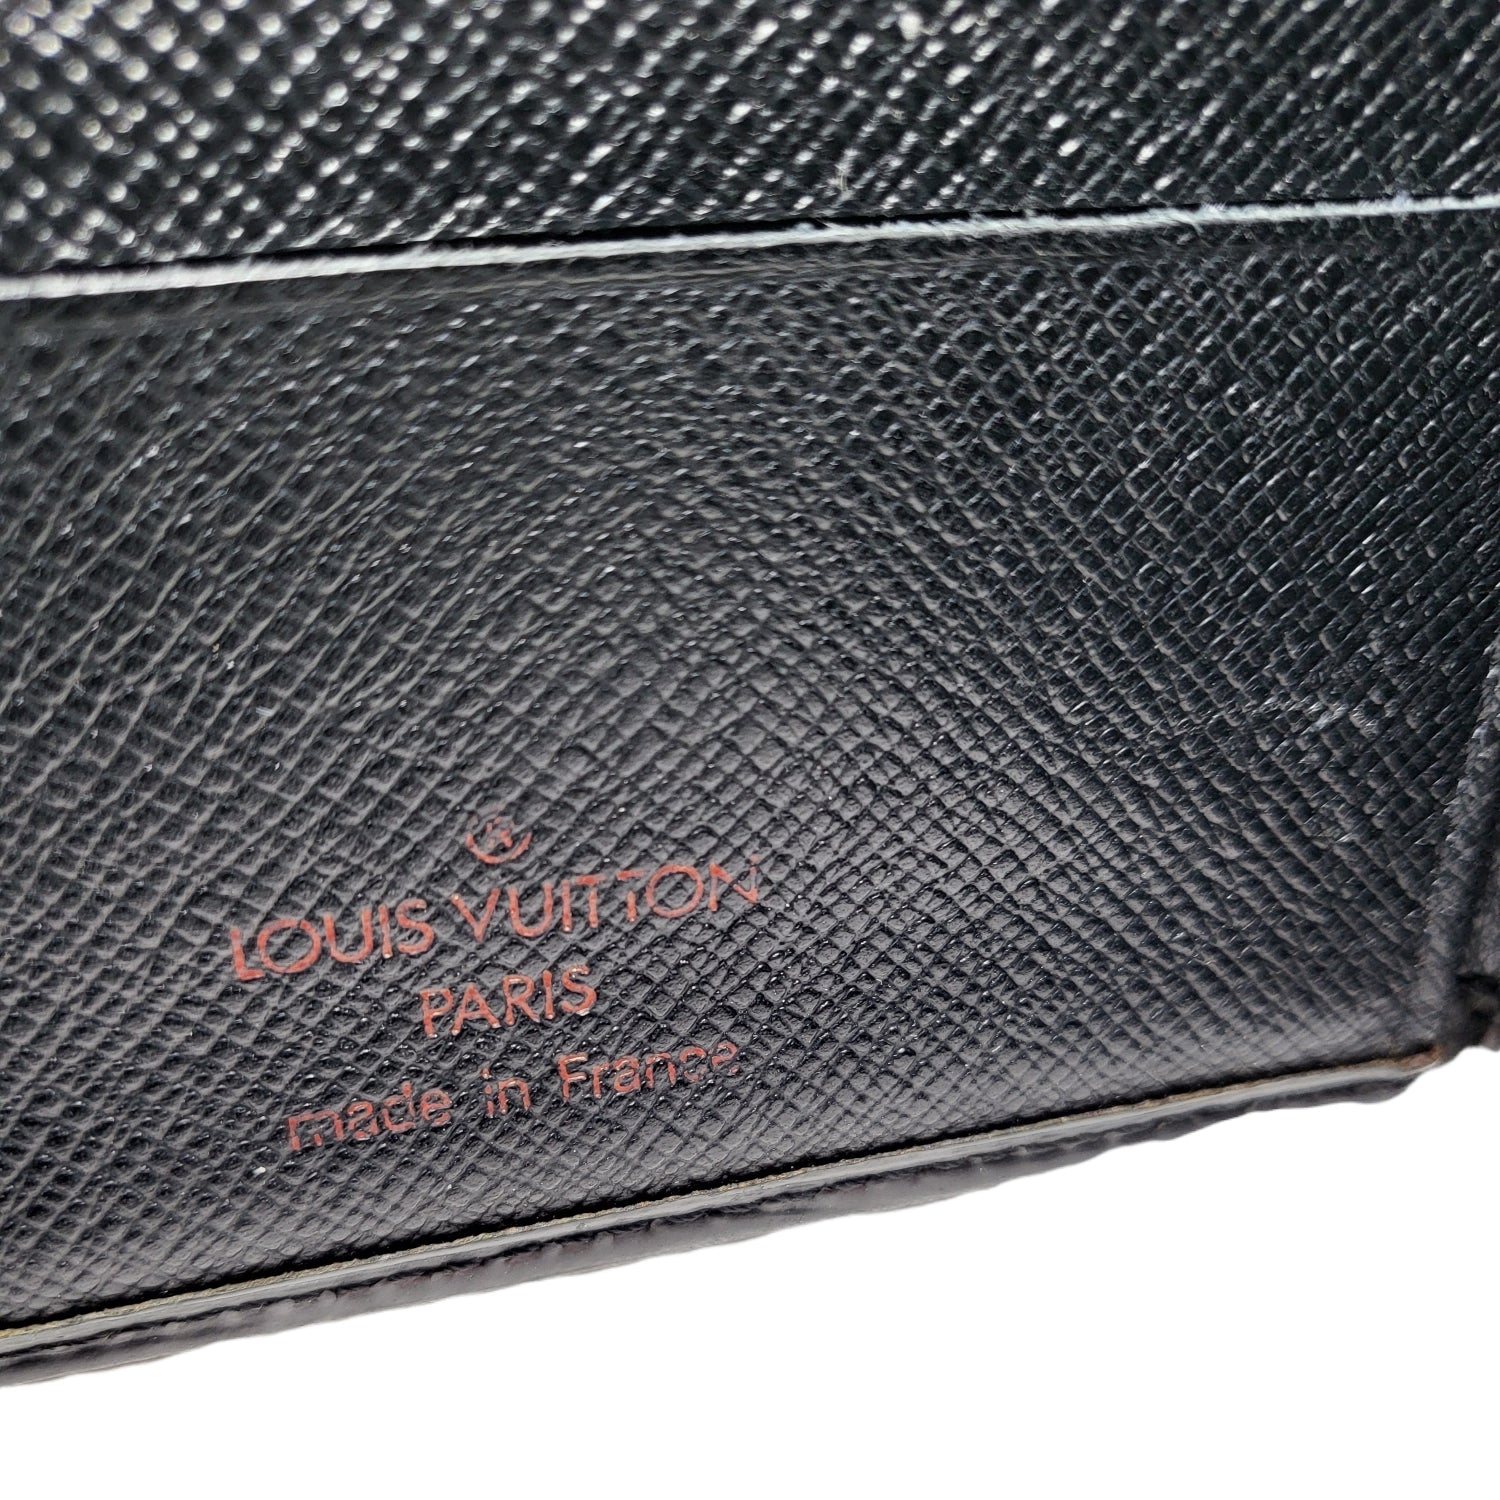 Louis Vuitton, large vintage Epi Leather wallet, cream t…